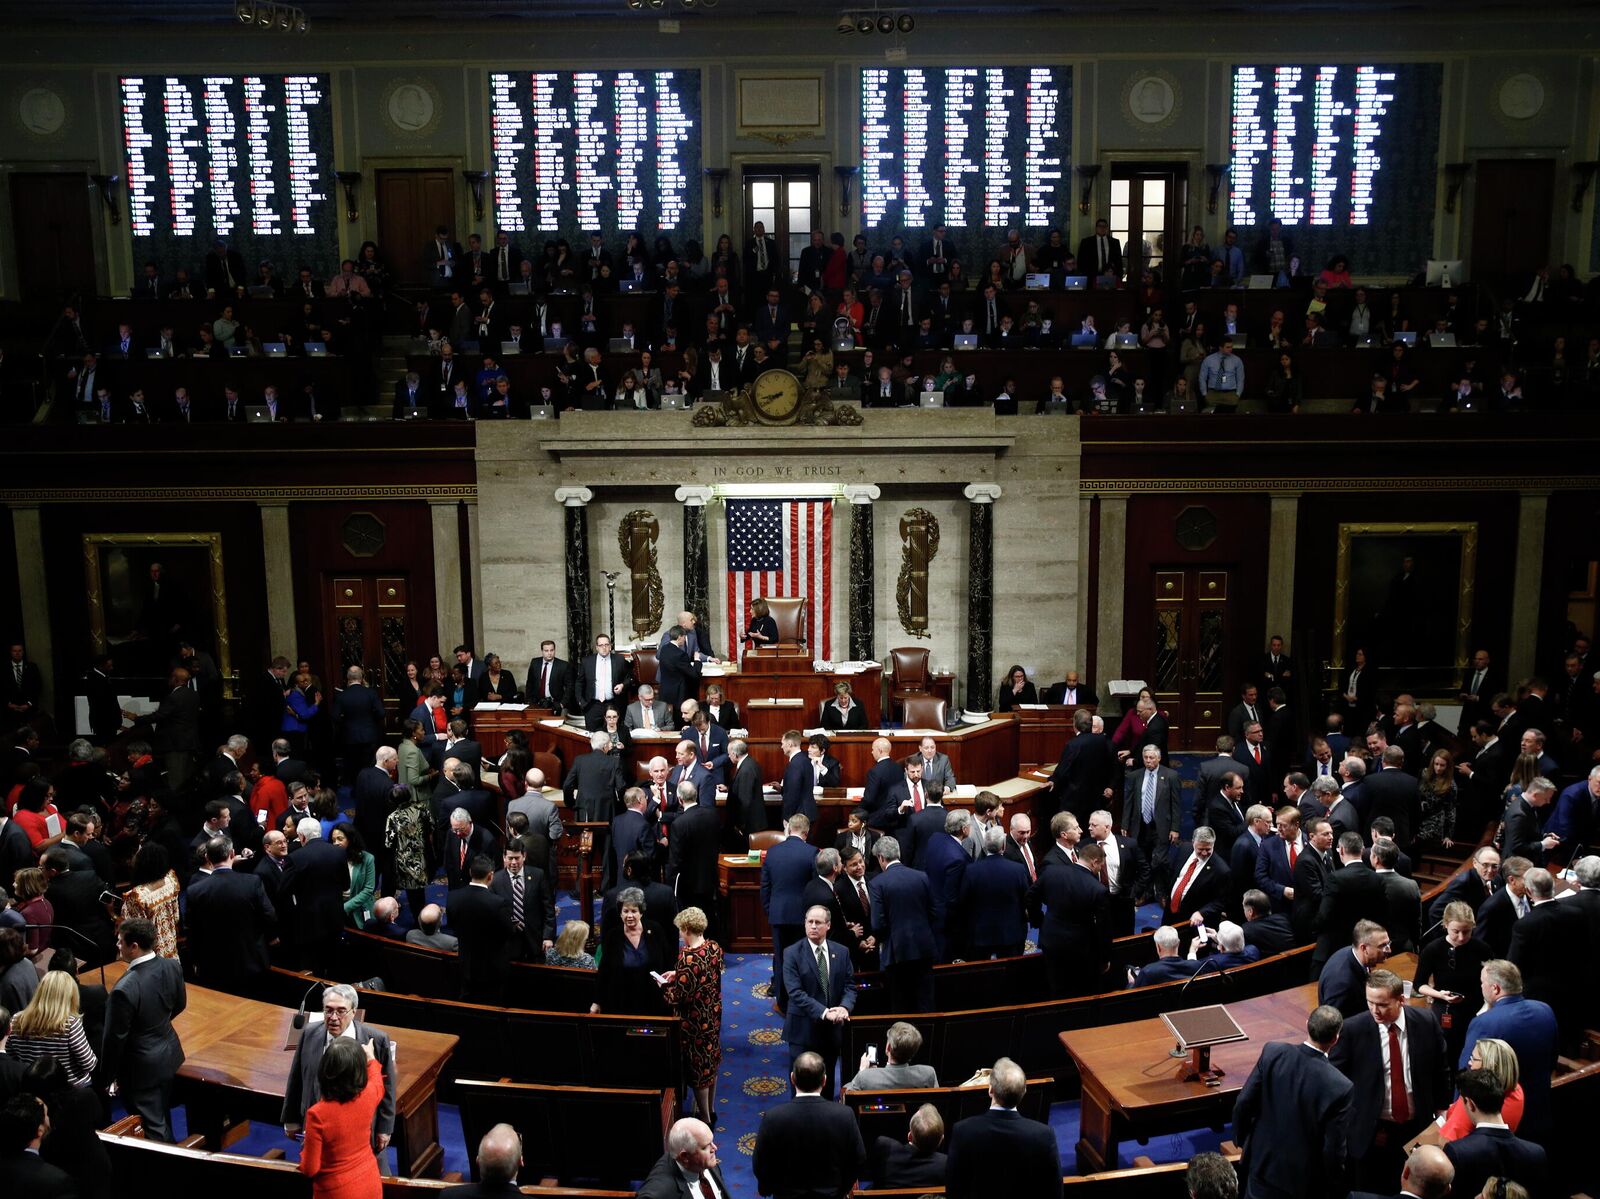 Сенат и палата представителей США. Конгресс США это парламент. Сенат конгресса США. Палаты конгресса США Сената. Сенат и палата представителей